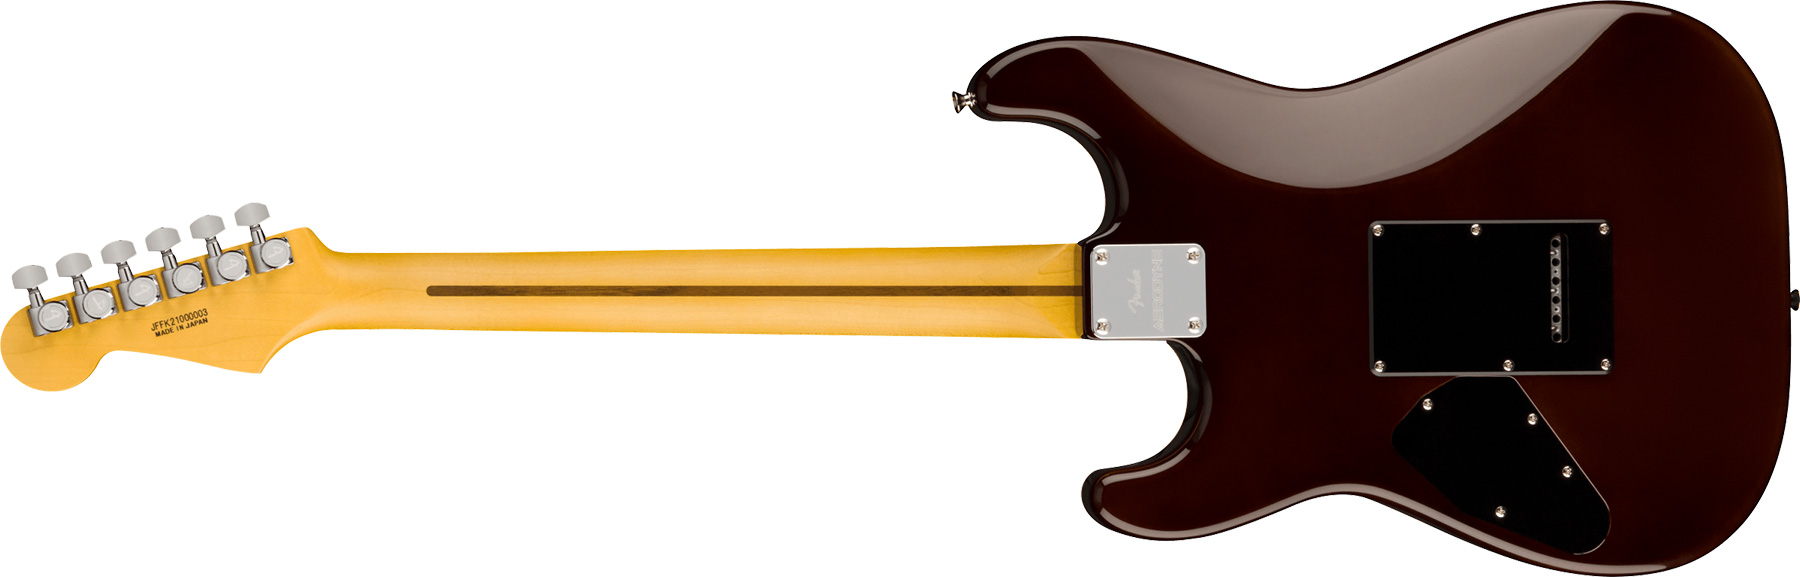 Fender Strat Aerodyne Special Jap 3s Trem Rw - Chocolate Burst - Elektrische gitaar in Str-vorm - Variation 1